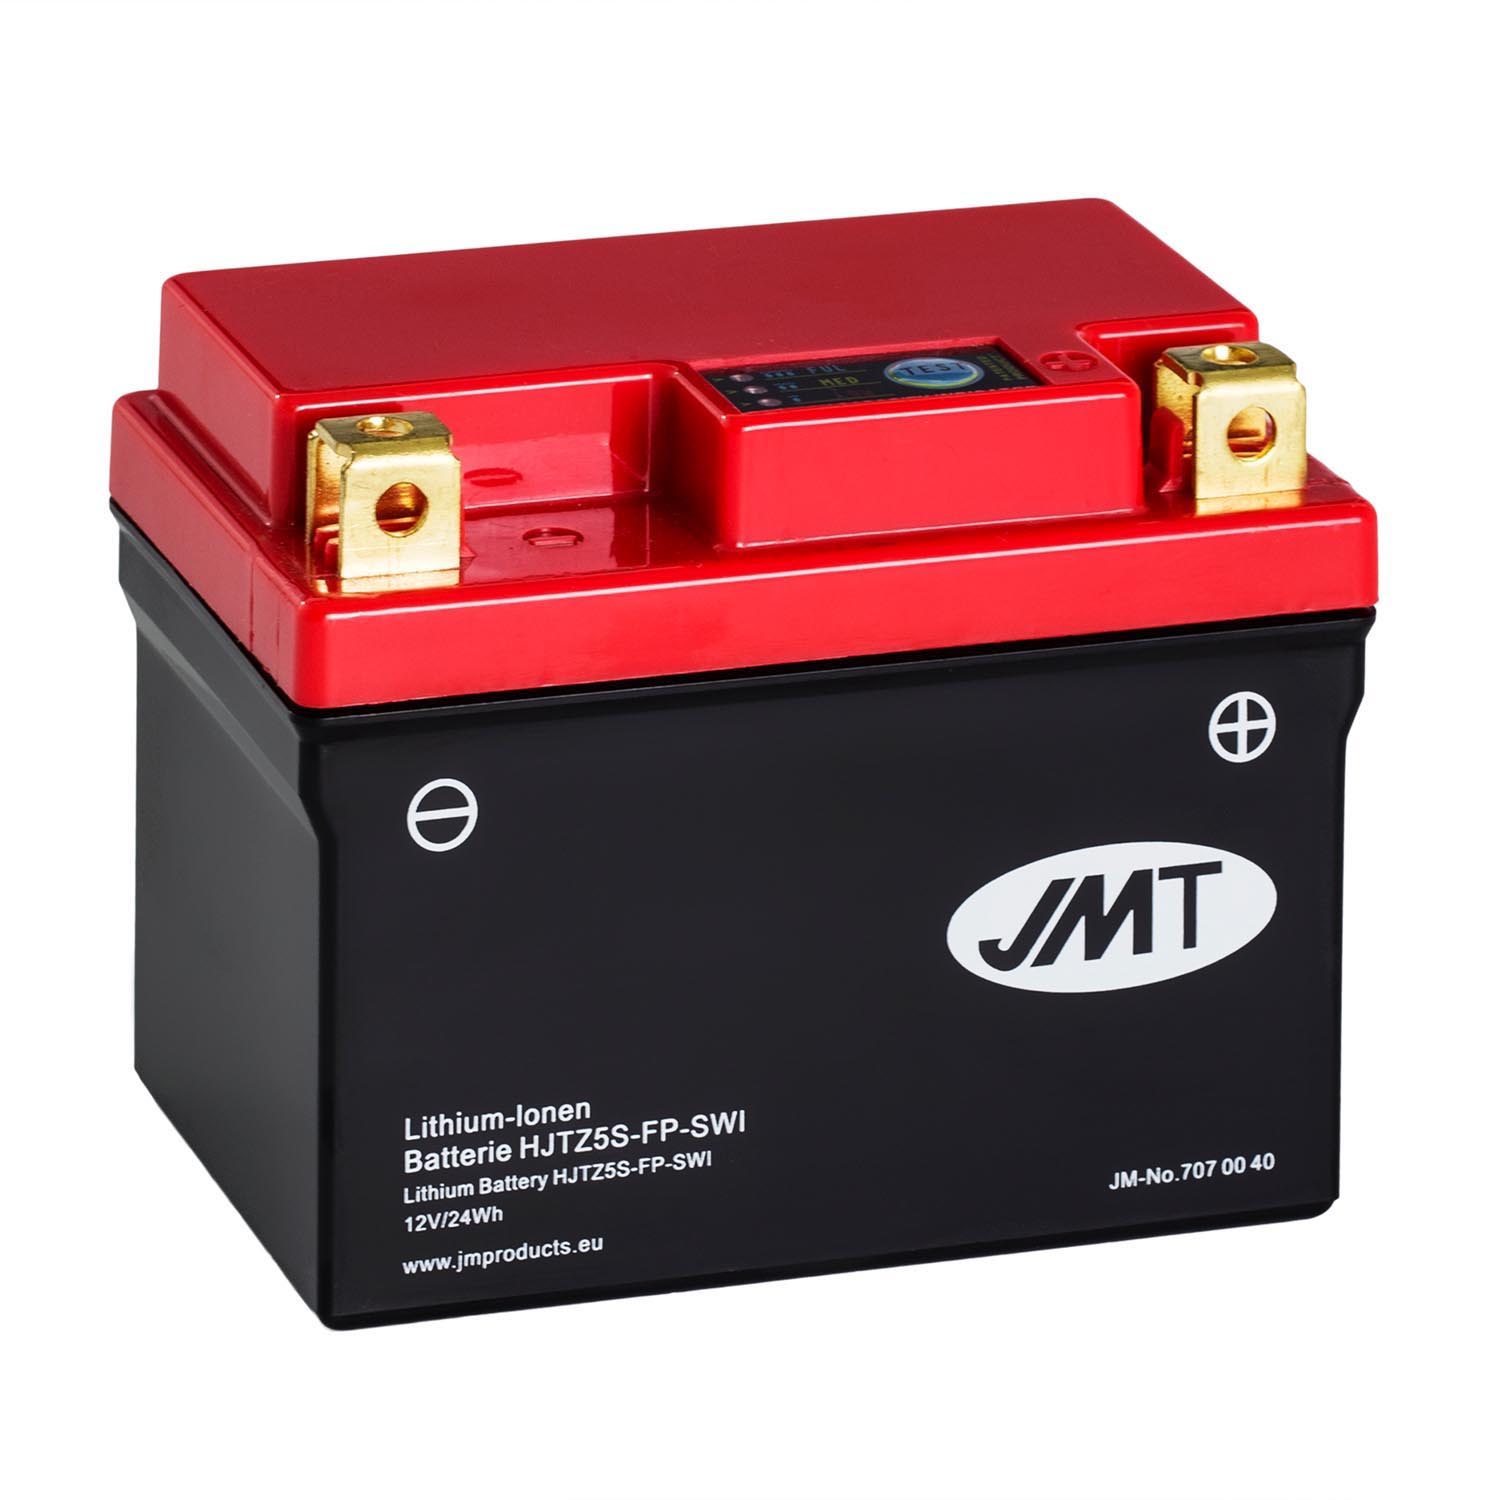 JMT Lithium-Ionen-Motorrad-Batterie HJTZ5S-FP 12V